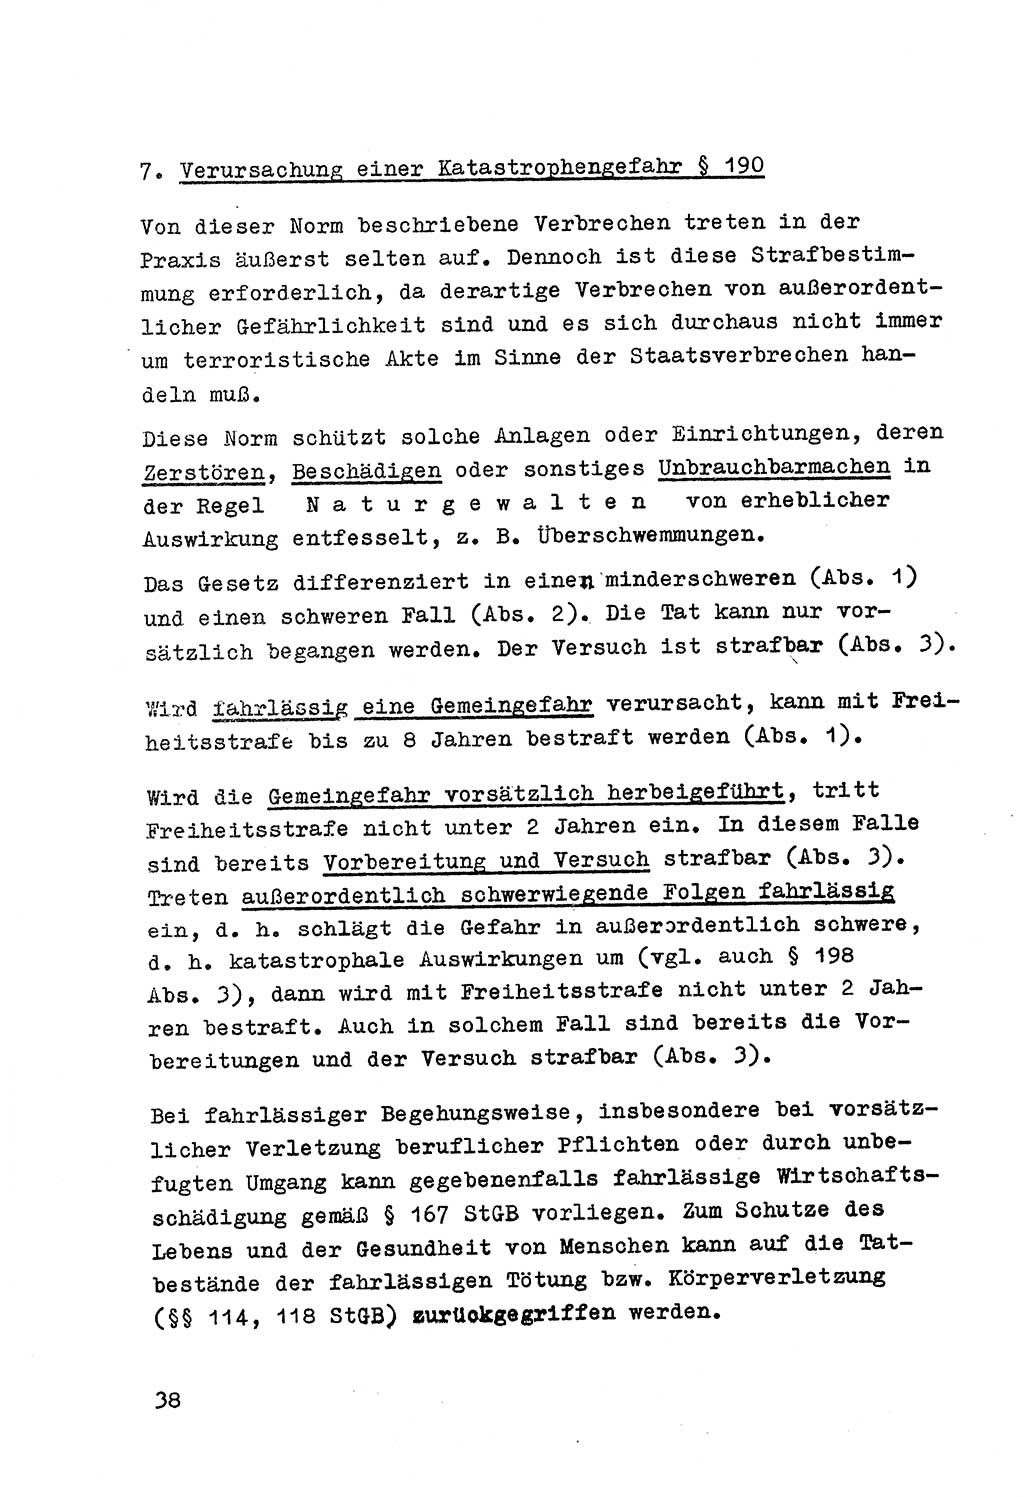 Strafrecht der DDR (Deutsche Demokratische Republik), Besonderer Teil, Lehrmaterial, Heft 7 1970, Seite 38 (Strafr. DDR BT Lehrmat. H. 7 1970, S. 38)